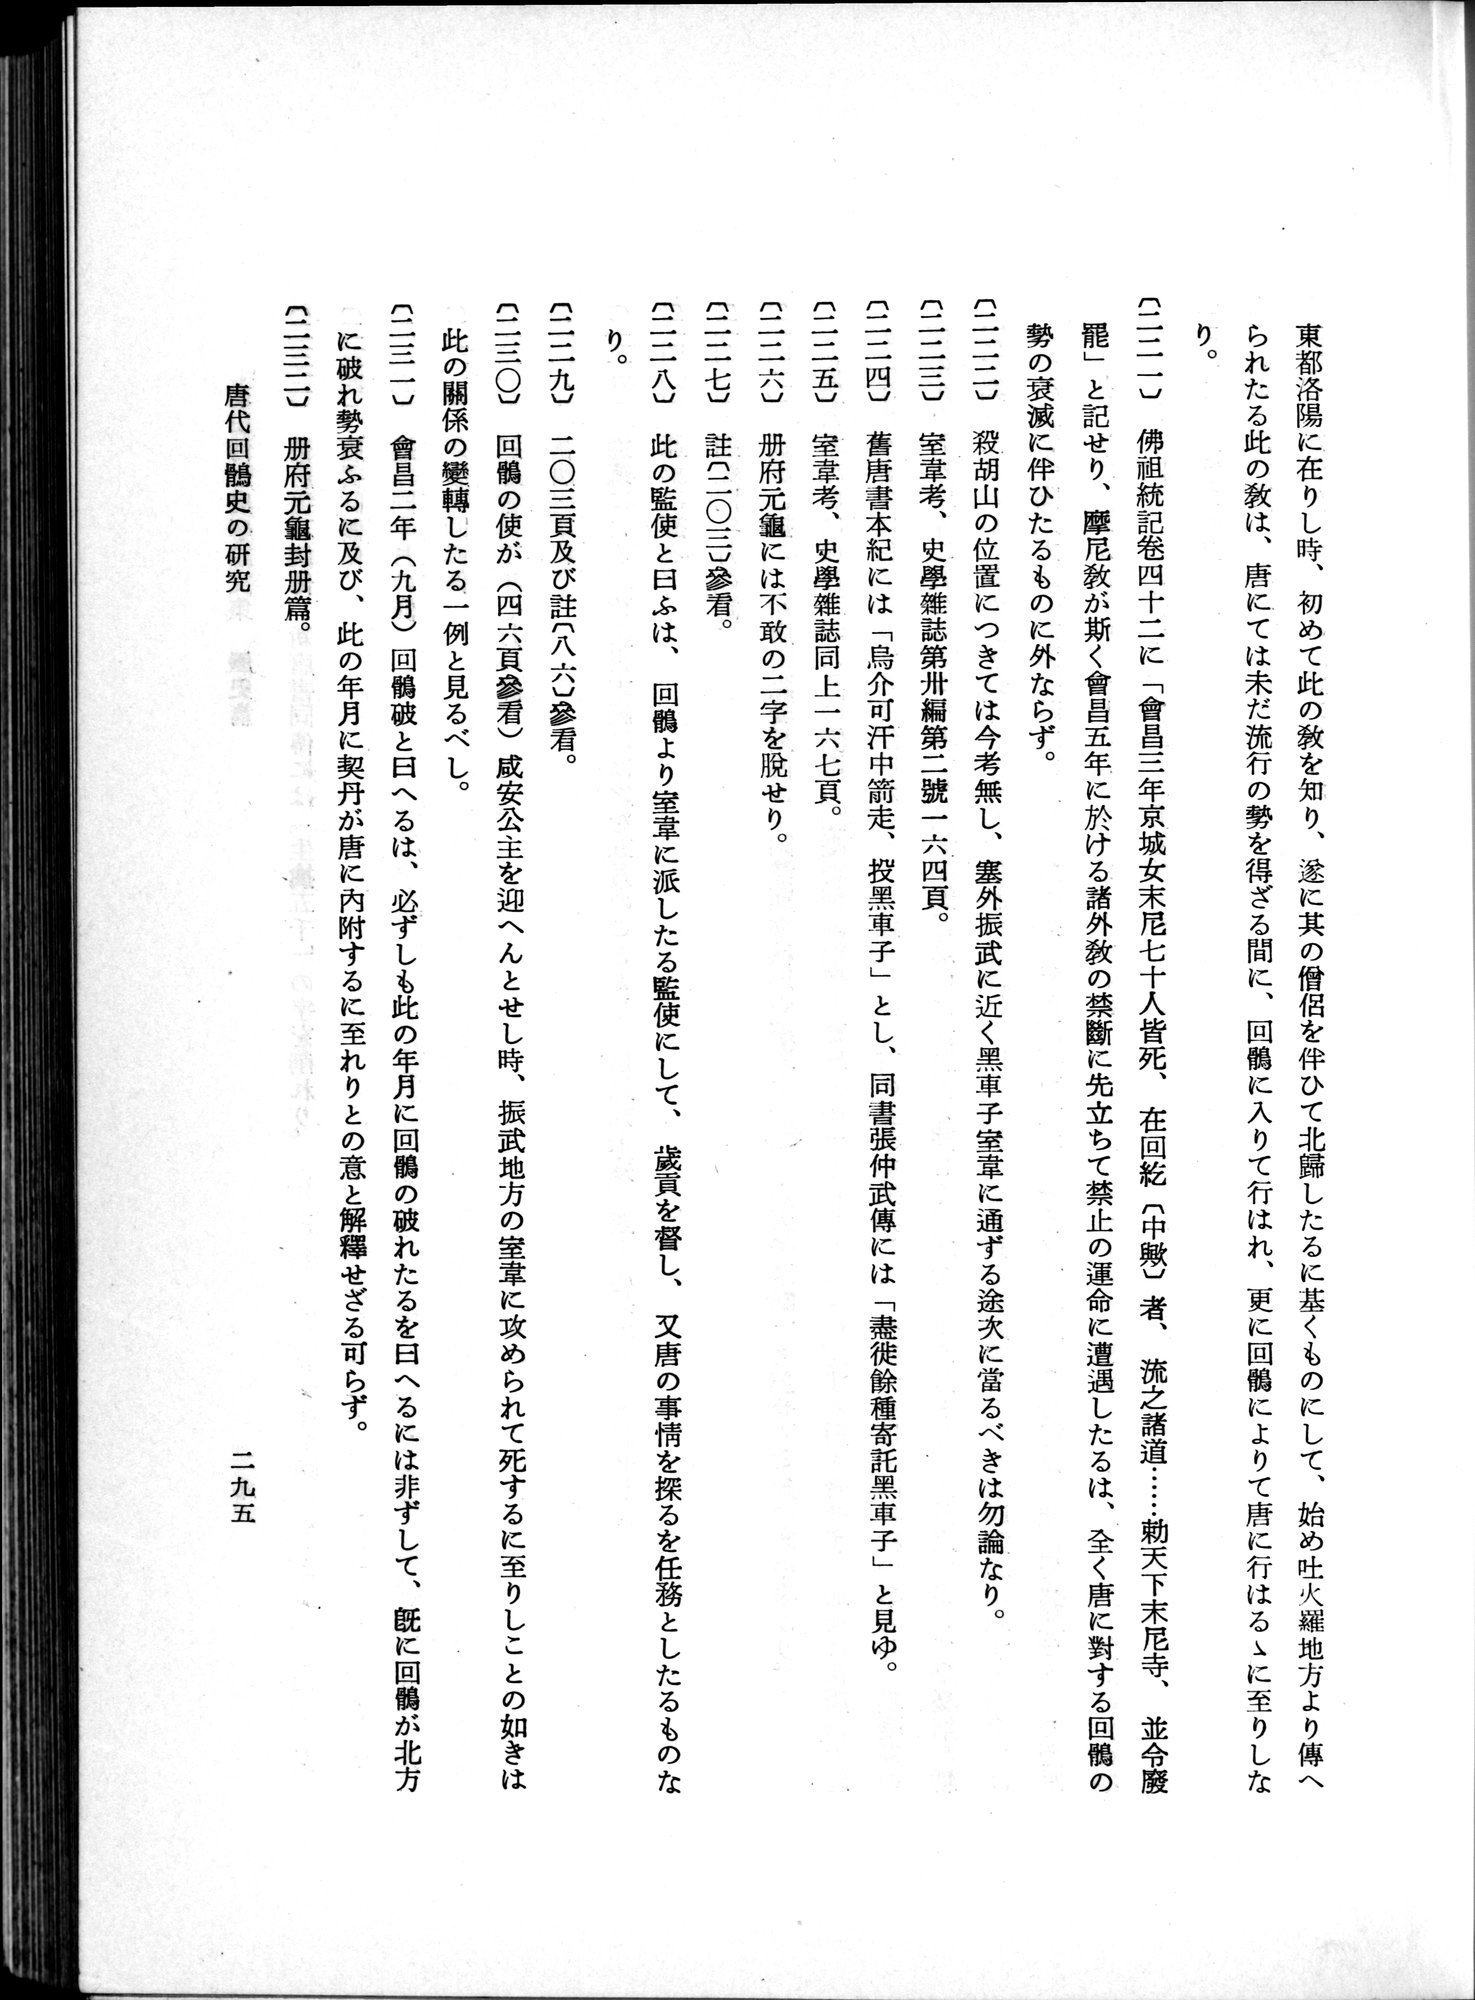 羽田博士史学論文集 : vol.1 / Page 333 (Grayscale High Resolution Image)